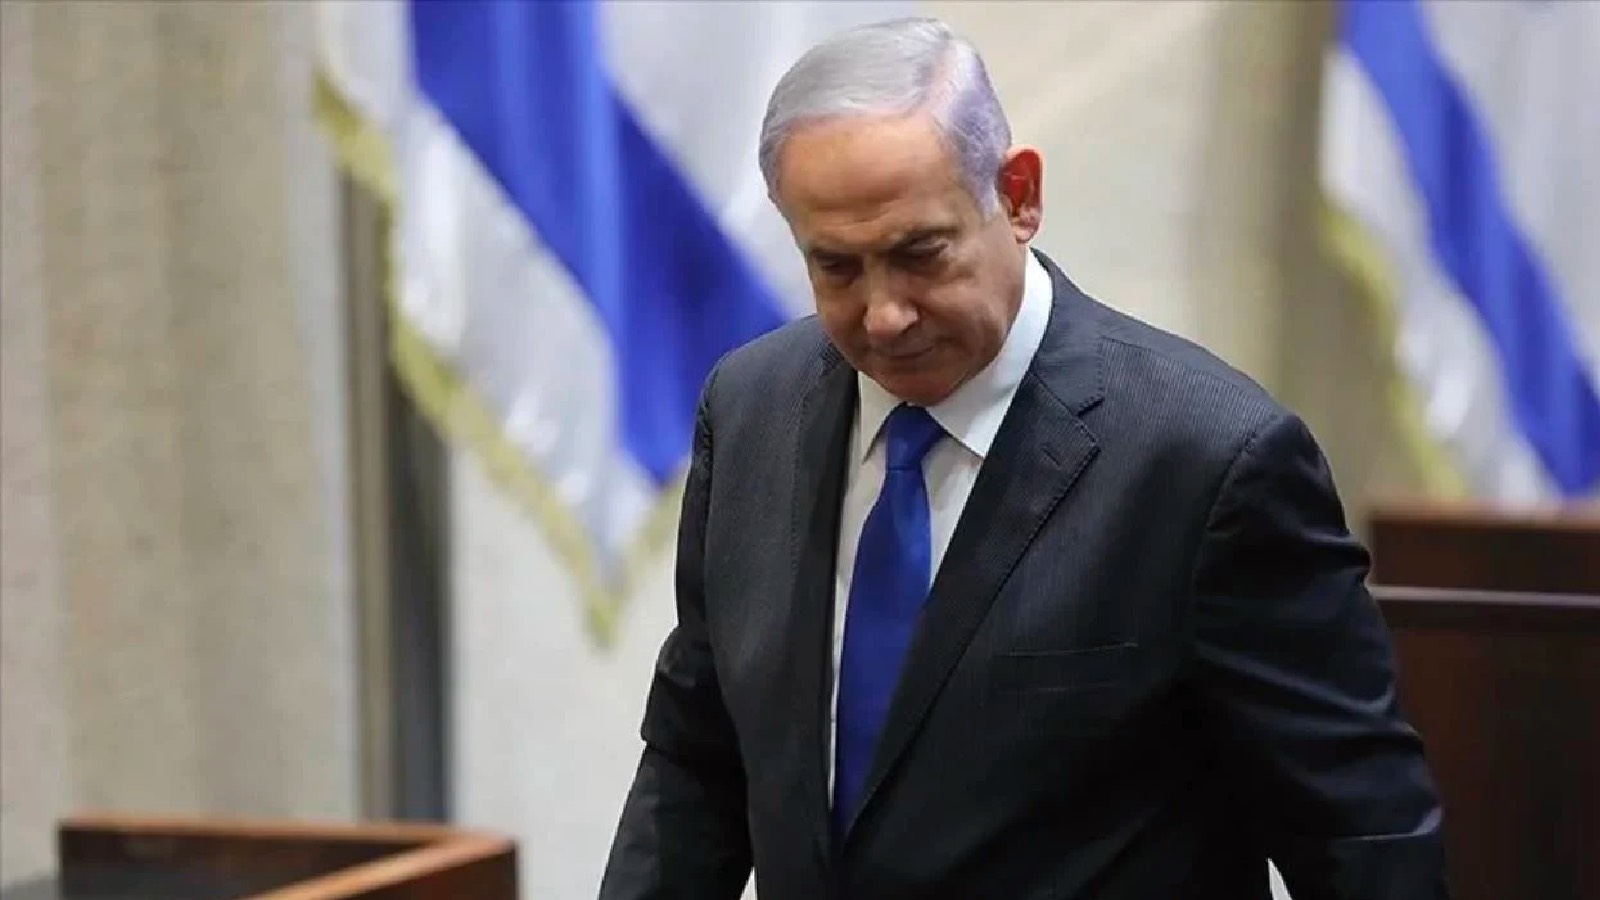 Fehmi Koru: Netanyahu İsrail için, İsrail de dünya için beka sorunu